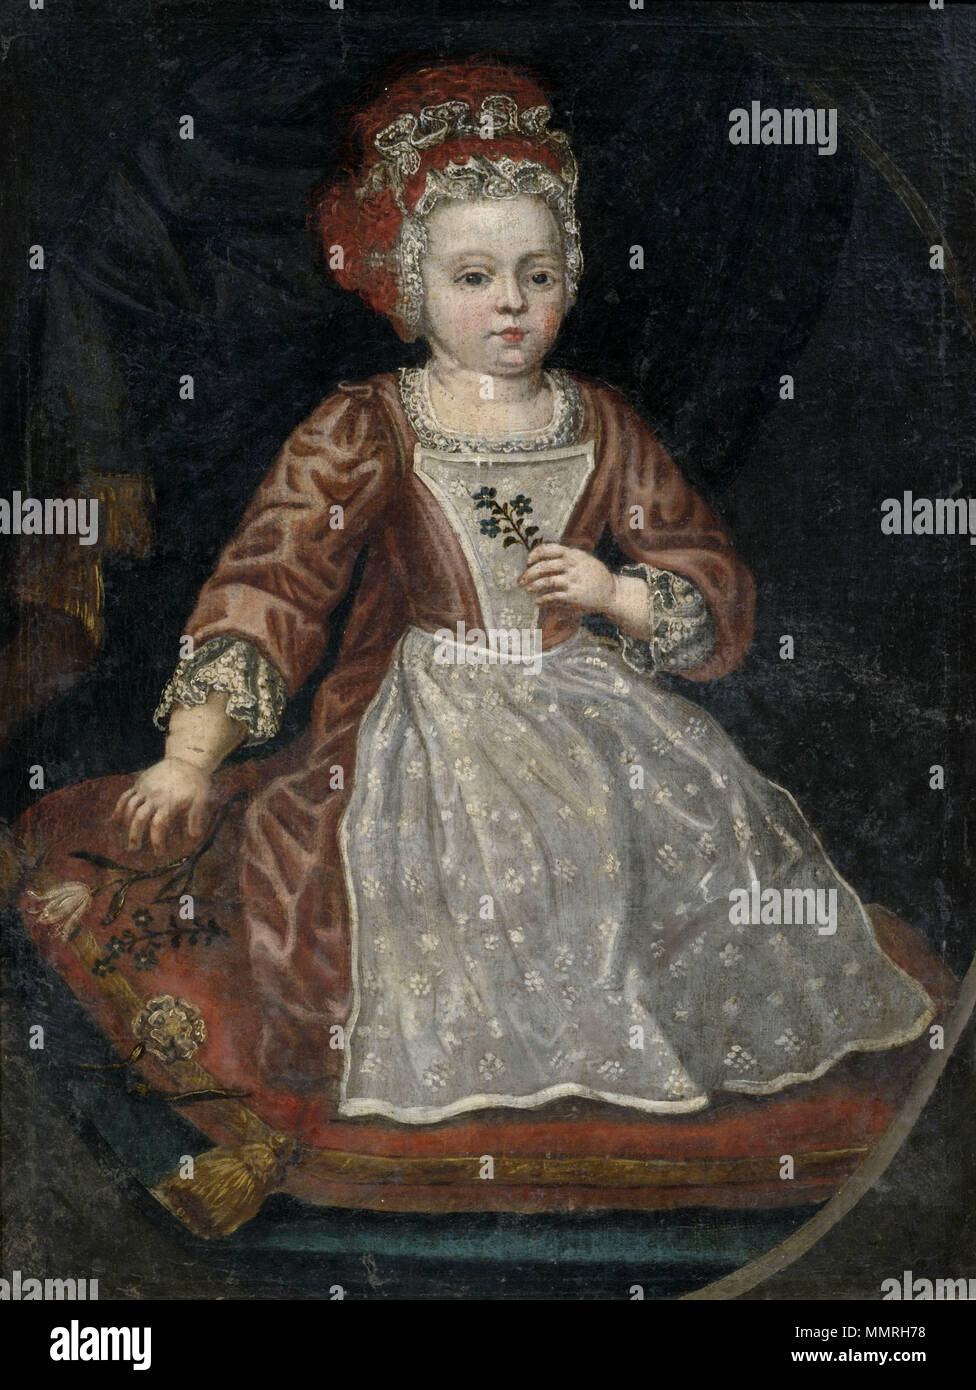 Bildnis eines kleinen Mädchens in rotem Kleid mit weißer Schürze 18 Jh Stock Photo